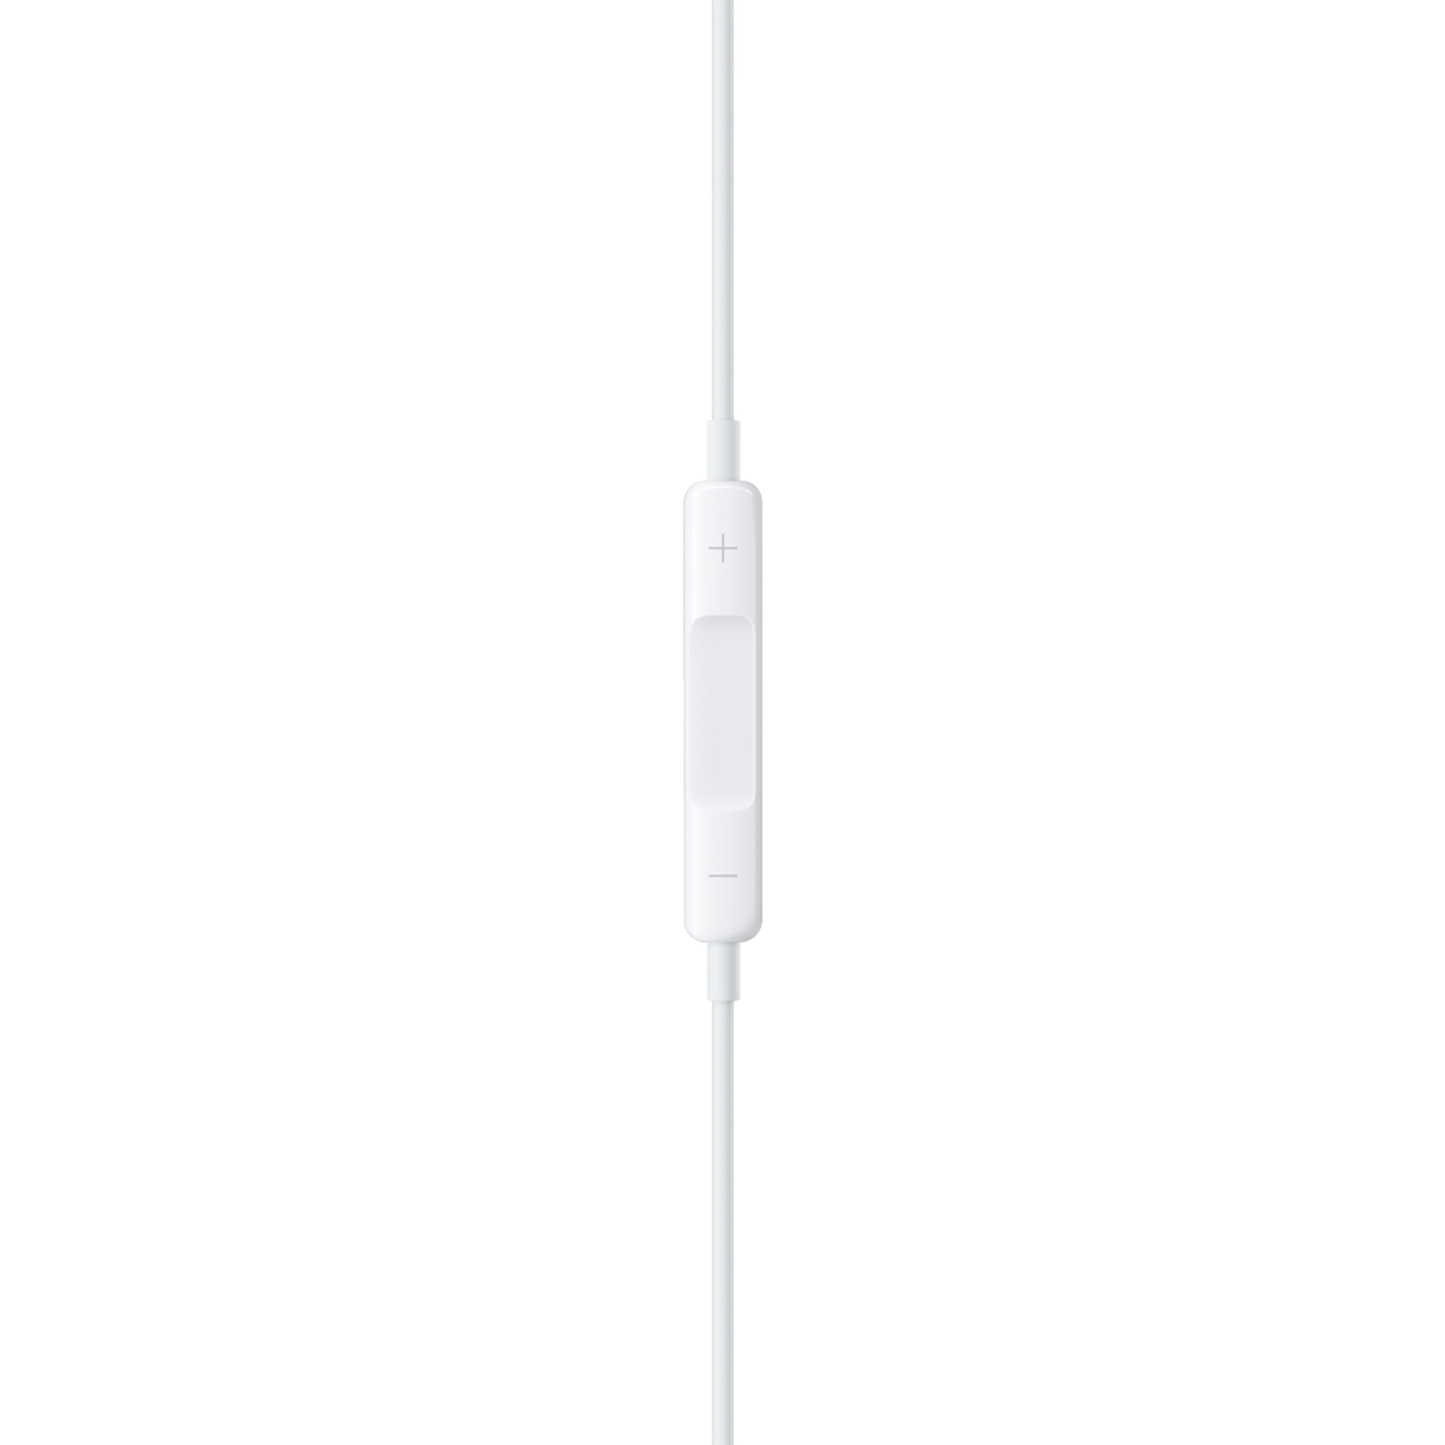 EarPods com USB-C têm suporte a áudio Lossless - MacMagazine